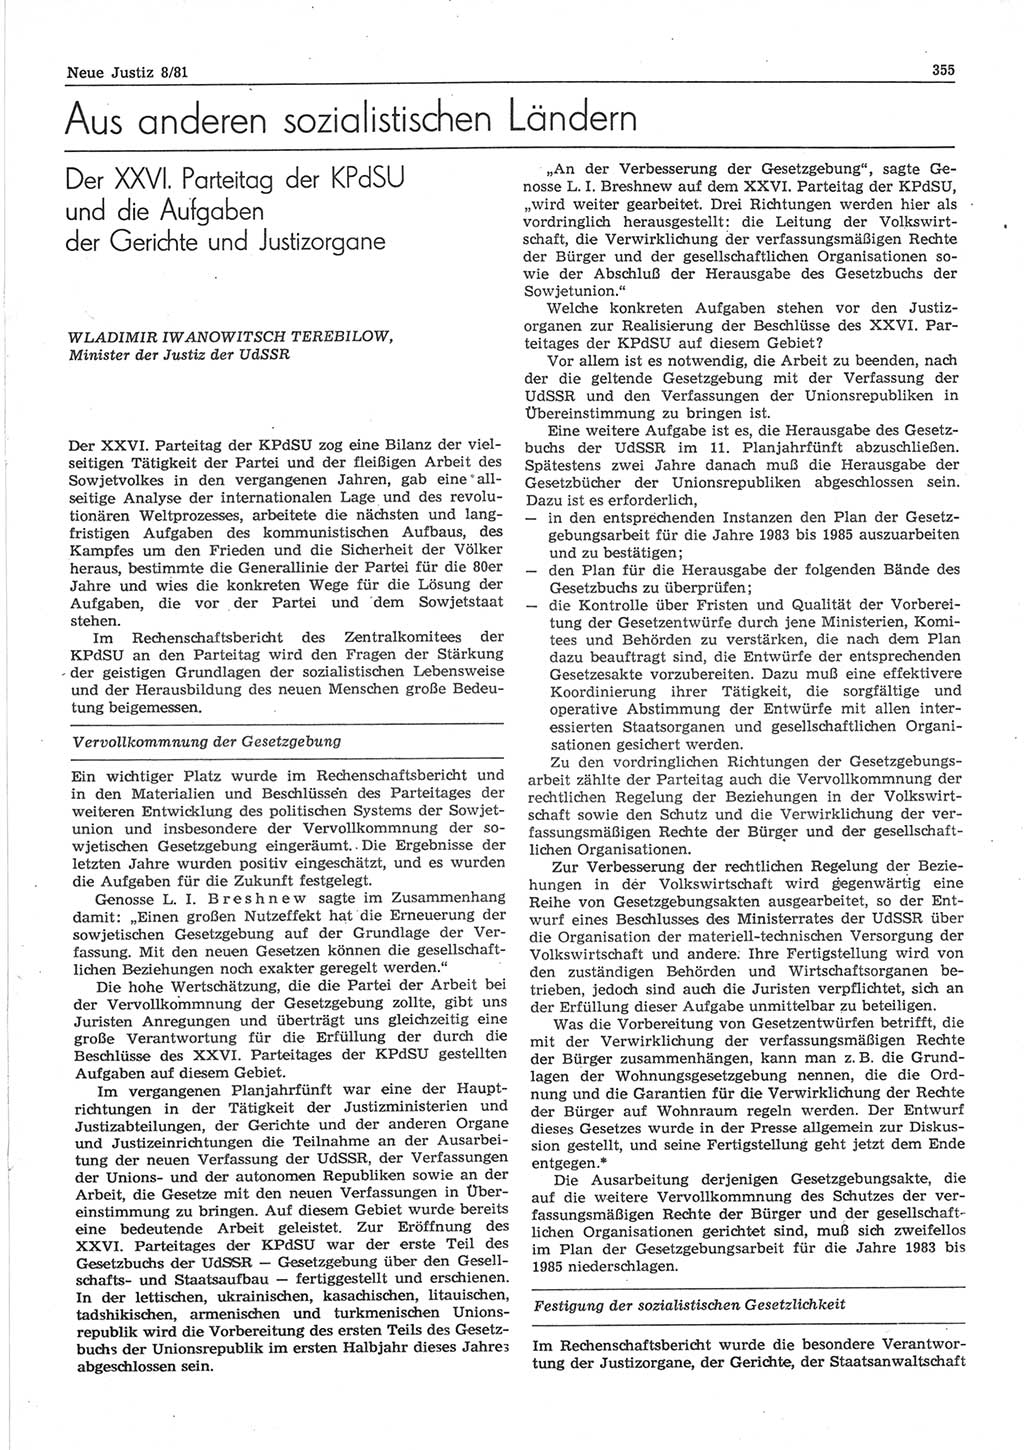 Neue Justiz (NJ), Zeitschrift für sozialistisches Recht und Gesetzlichkeit [Deutsche Demokratische Republik (DDR)], 35. Jahrgang 1981, Seite 355 (NJ DDR 1981, S. 355)